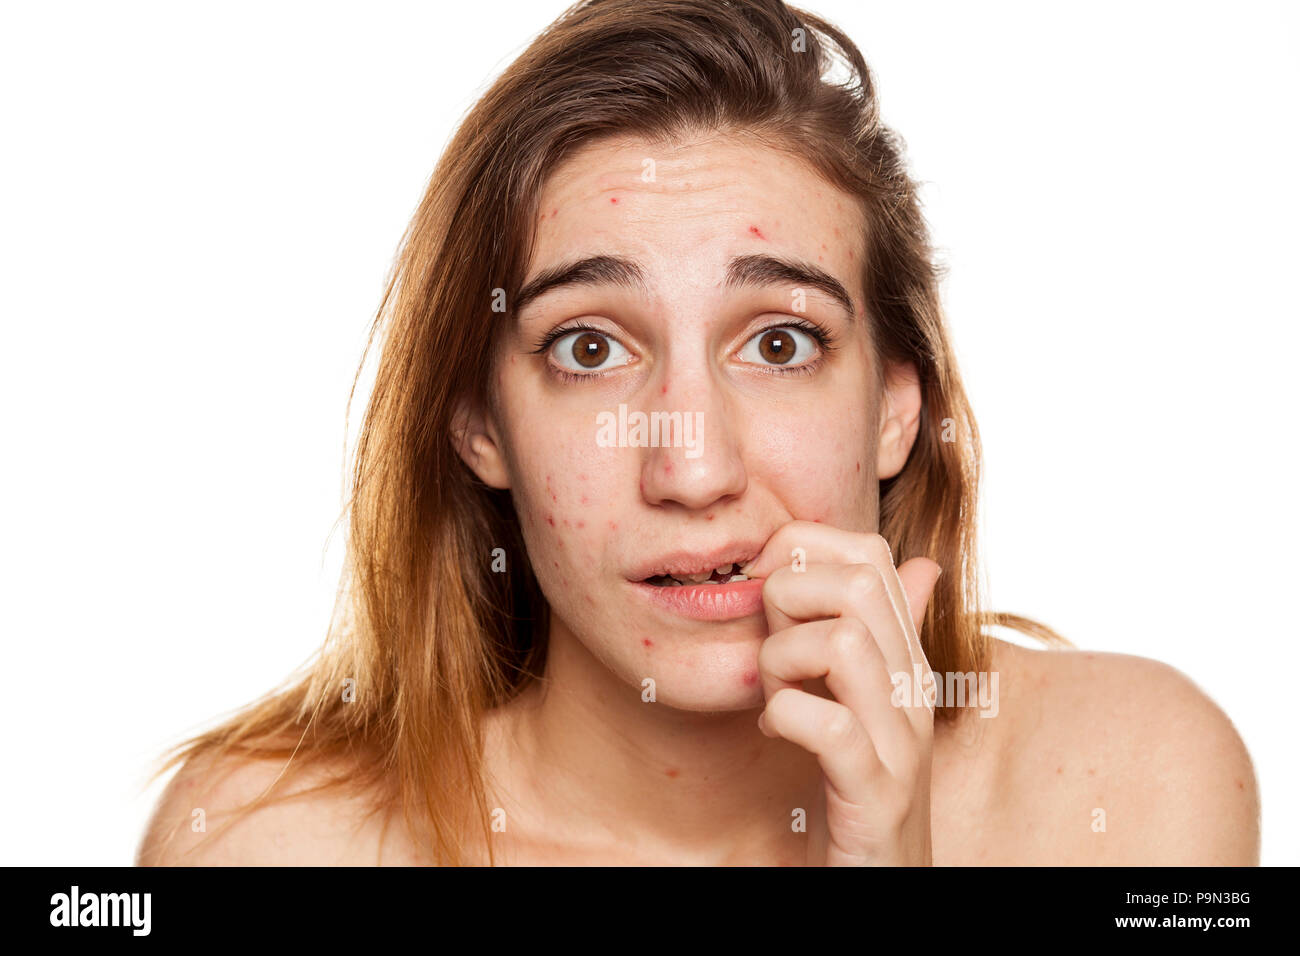 Junge besorgt Frau mit problematischer Haut und ohne Make-up Posen auf weißem Hintergrund Stockfoto